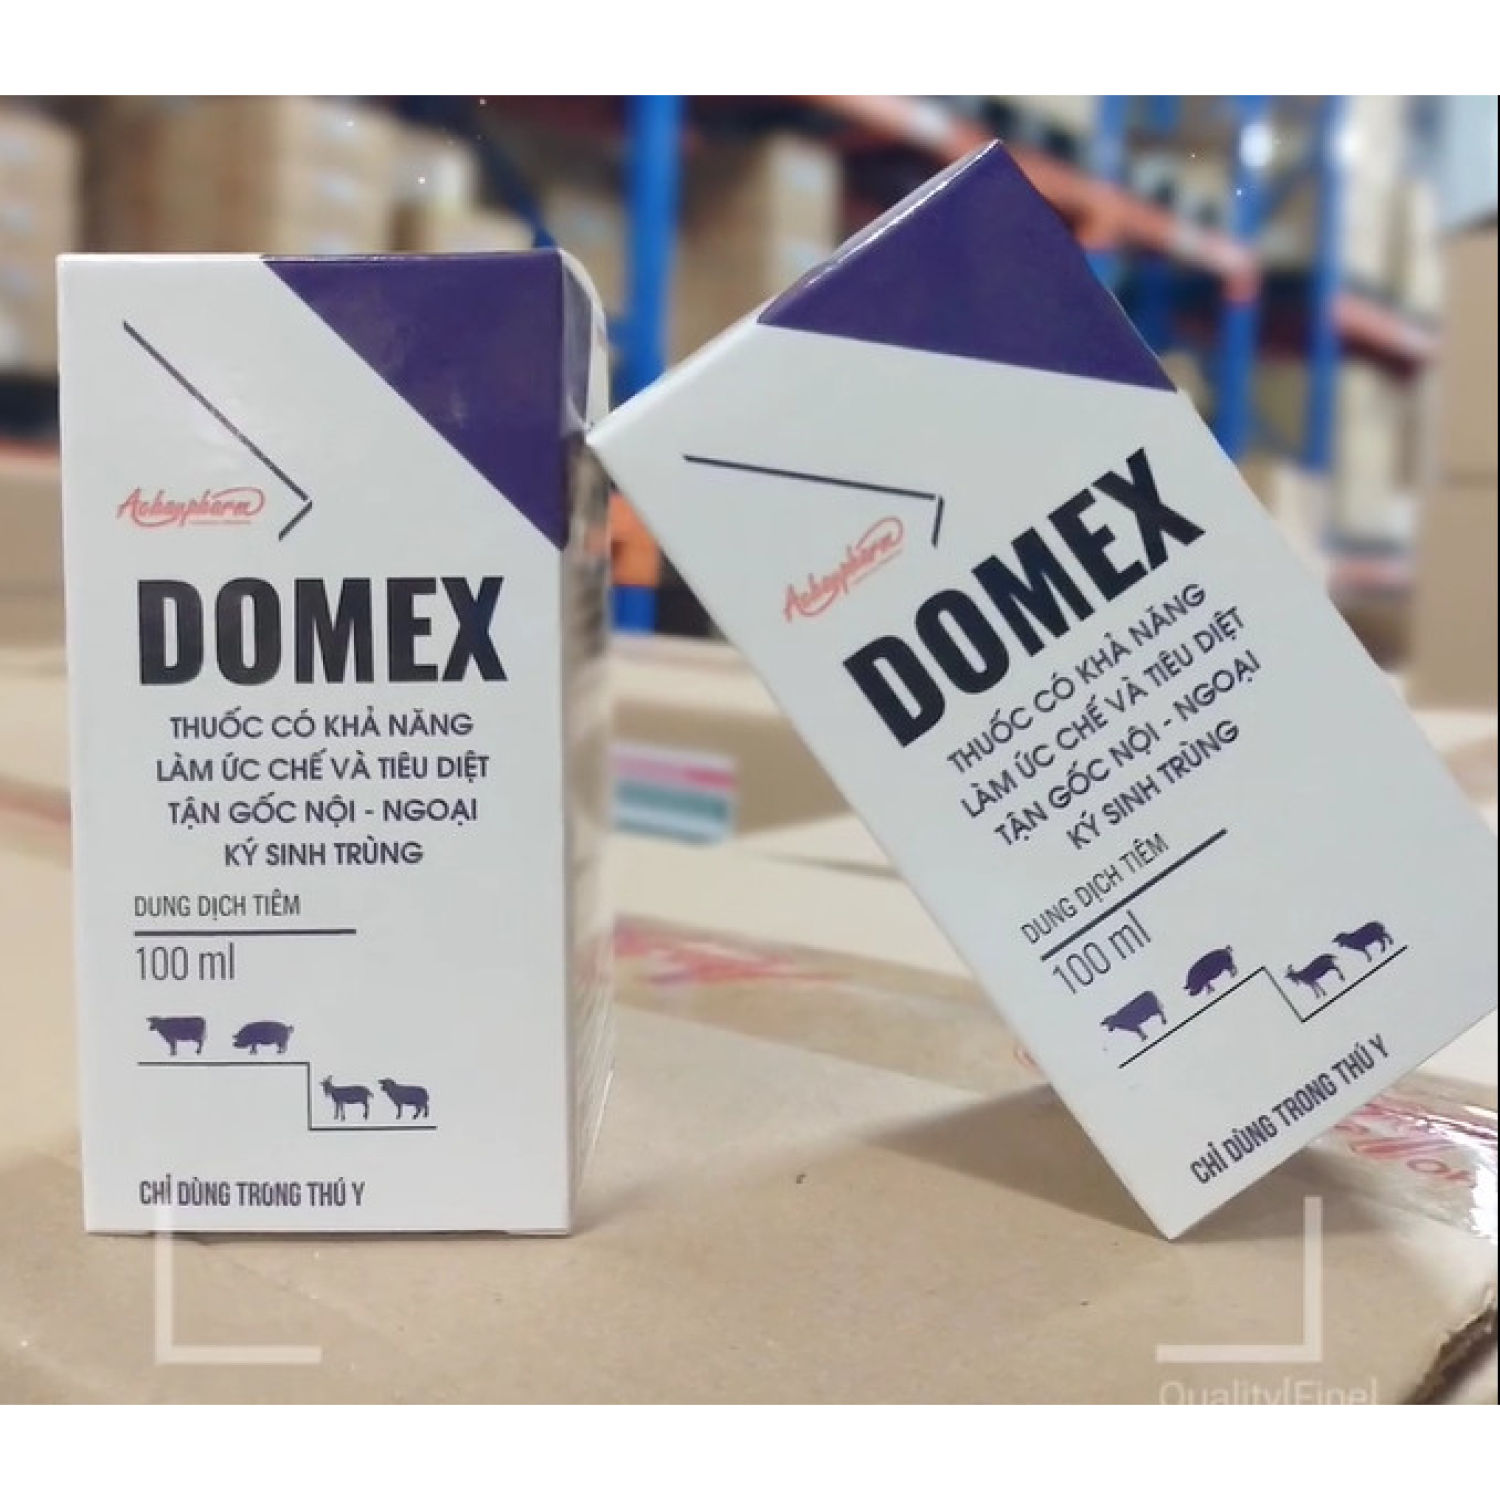 DOMEX - DIỆT TẬN GỐC KÝ SINH TRÙNG NỘI - NGOẠI dùng trong thú y